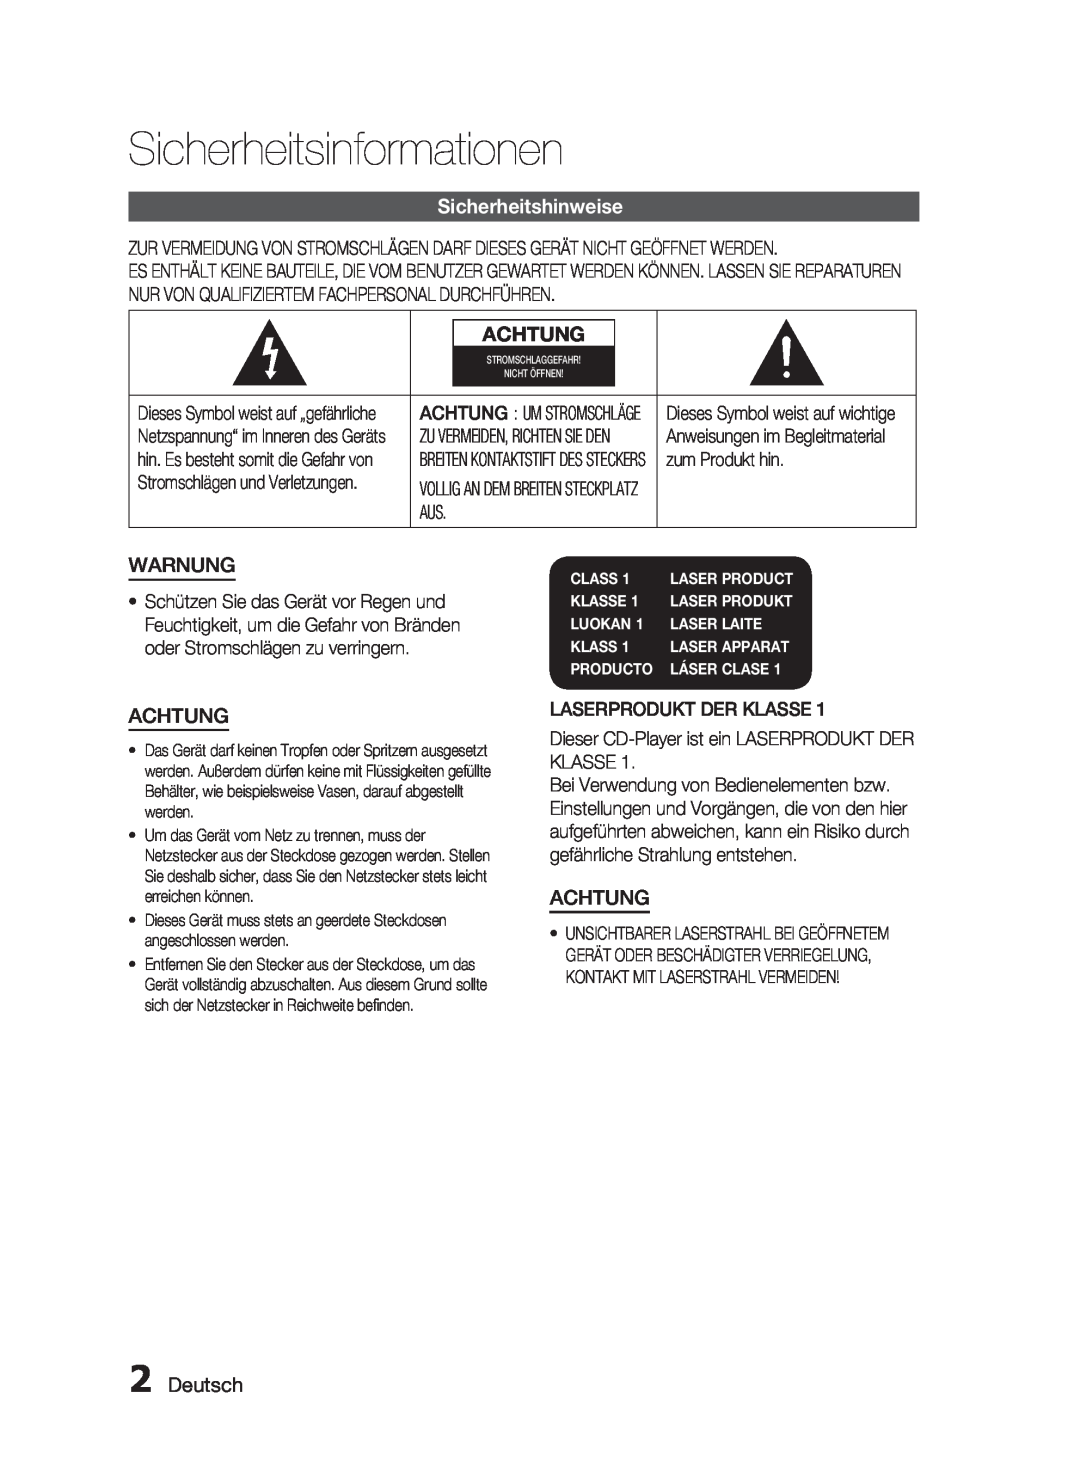 Samsung HT-C6200/XEF manual Sicherheitsinformationen, Sicherheitshinweise, Achtung, Warnung, Deutsch, Class, Klasse, Luokan 